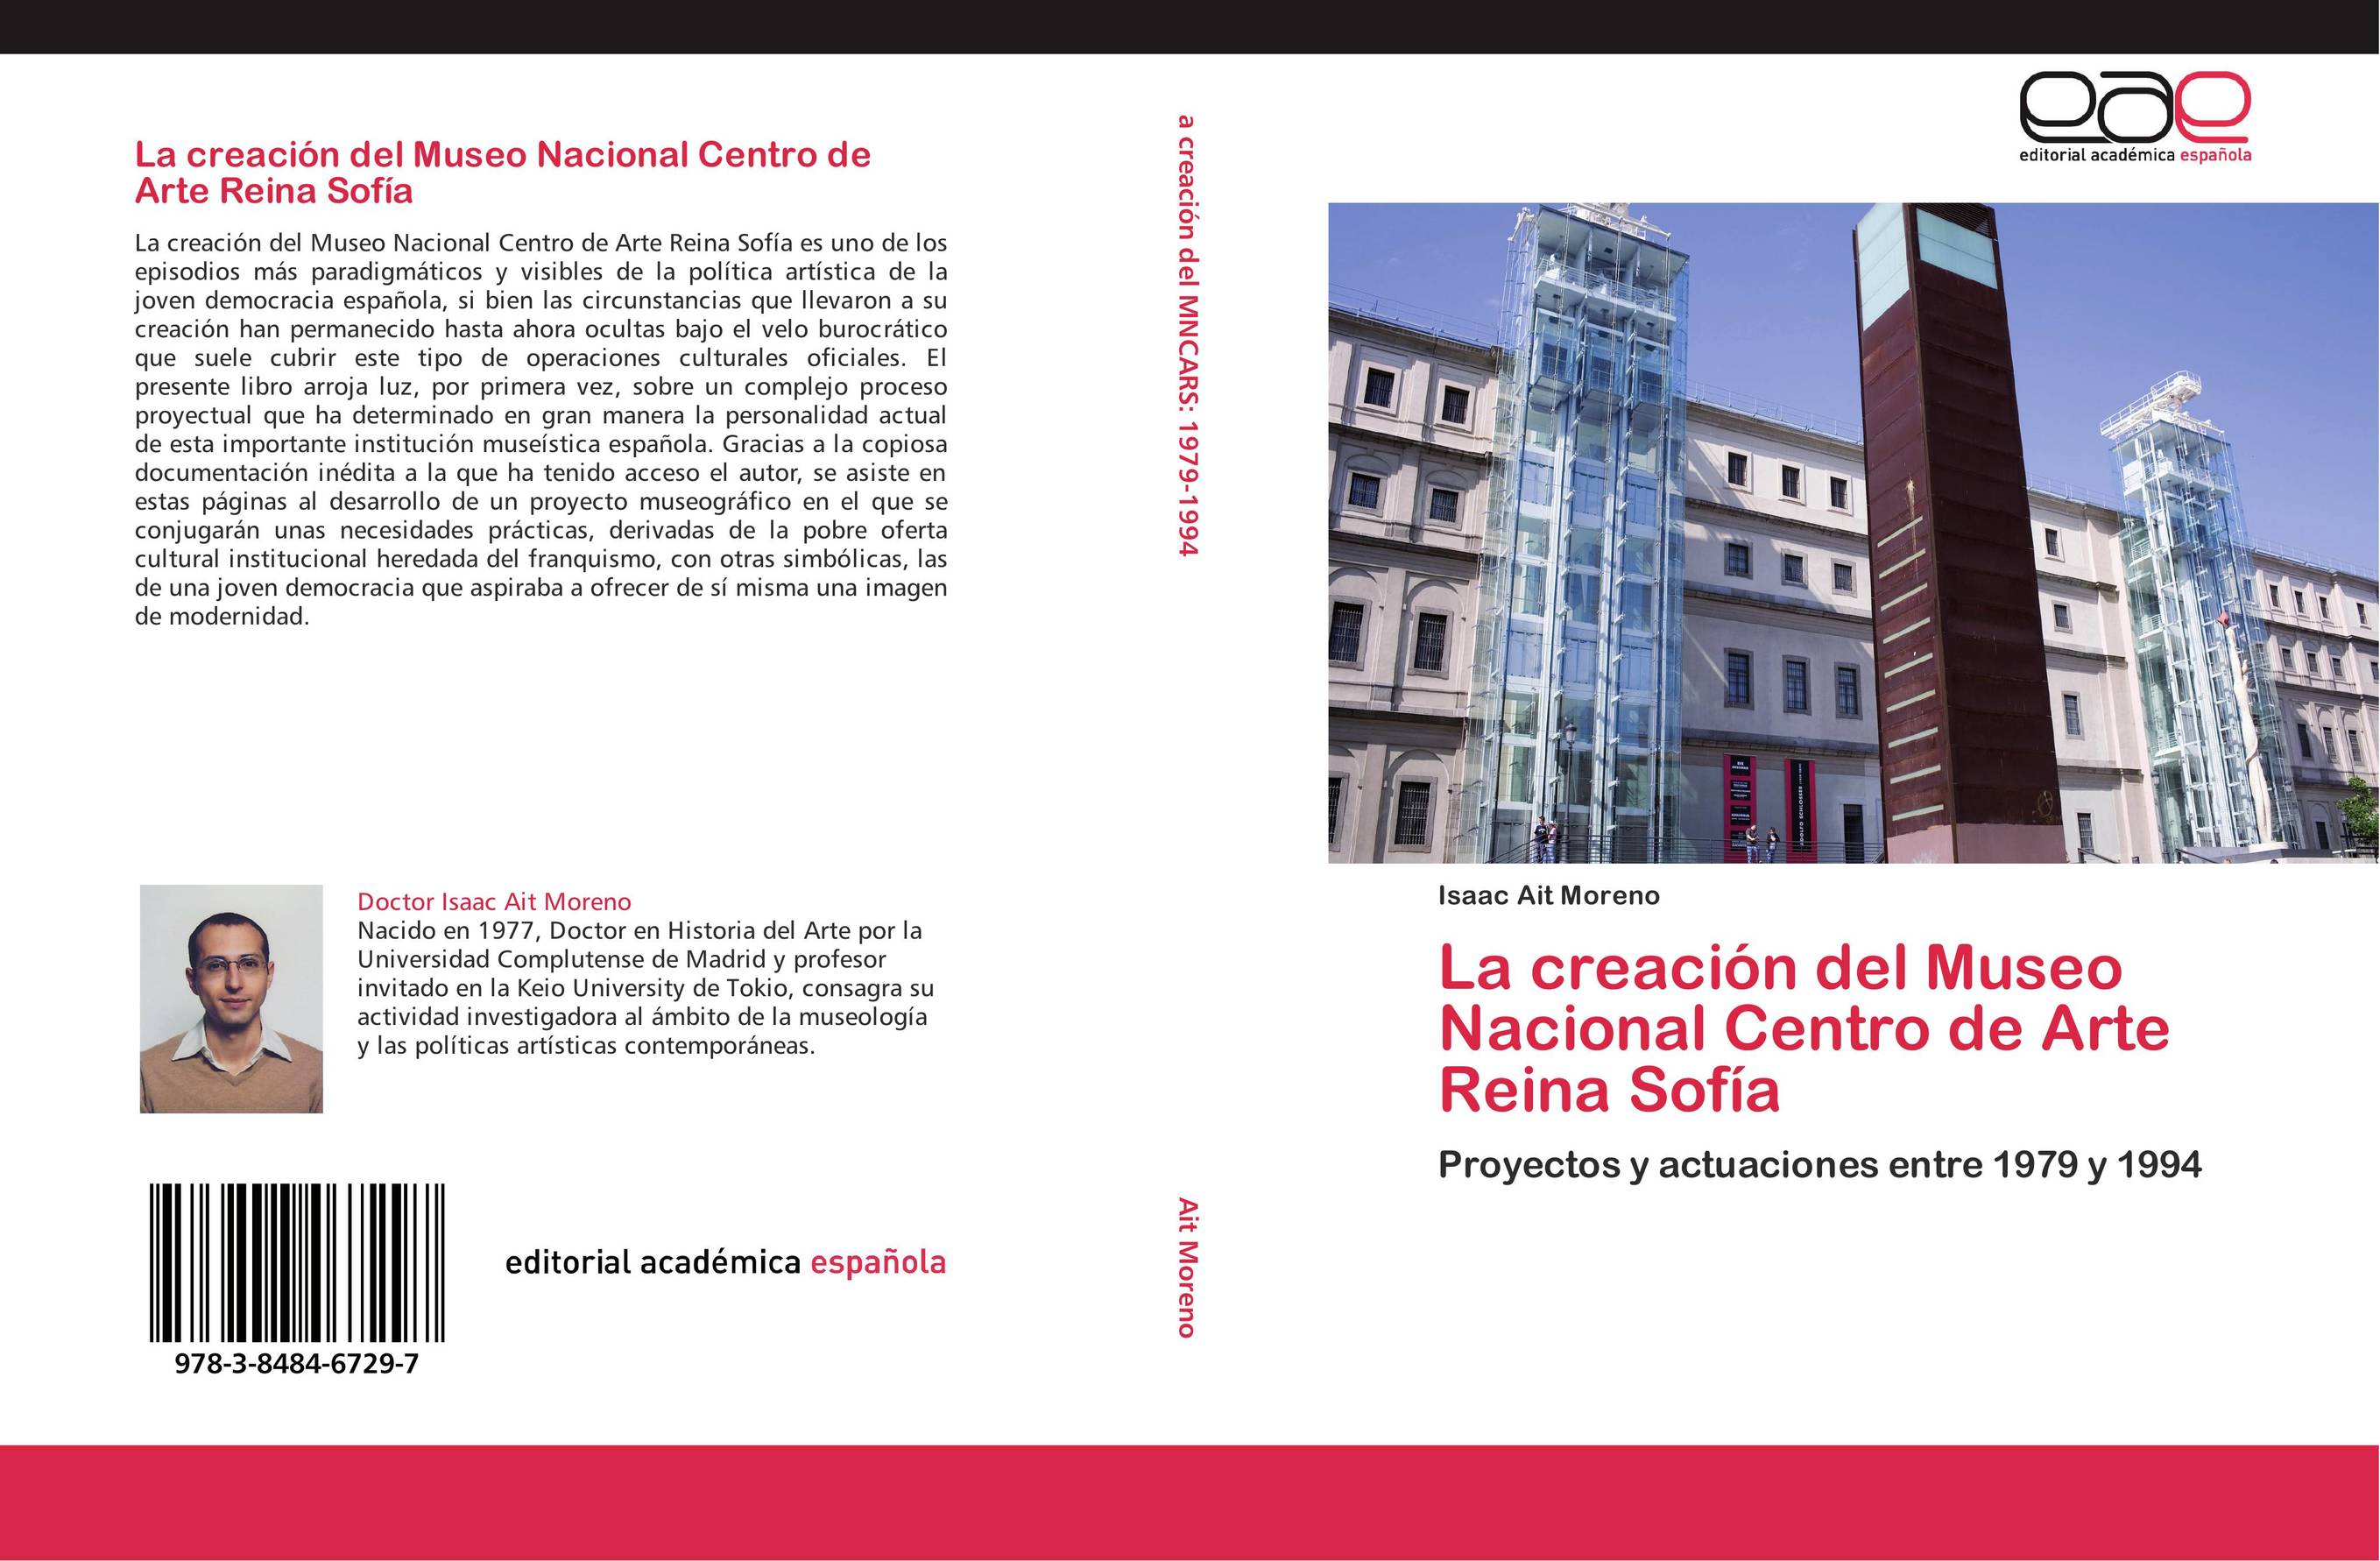 La creación del Museo Nacional Centro de Arte Reina Sofía